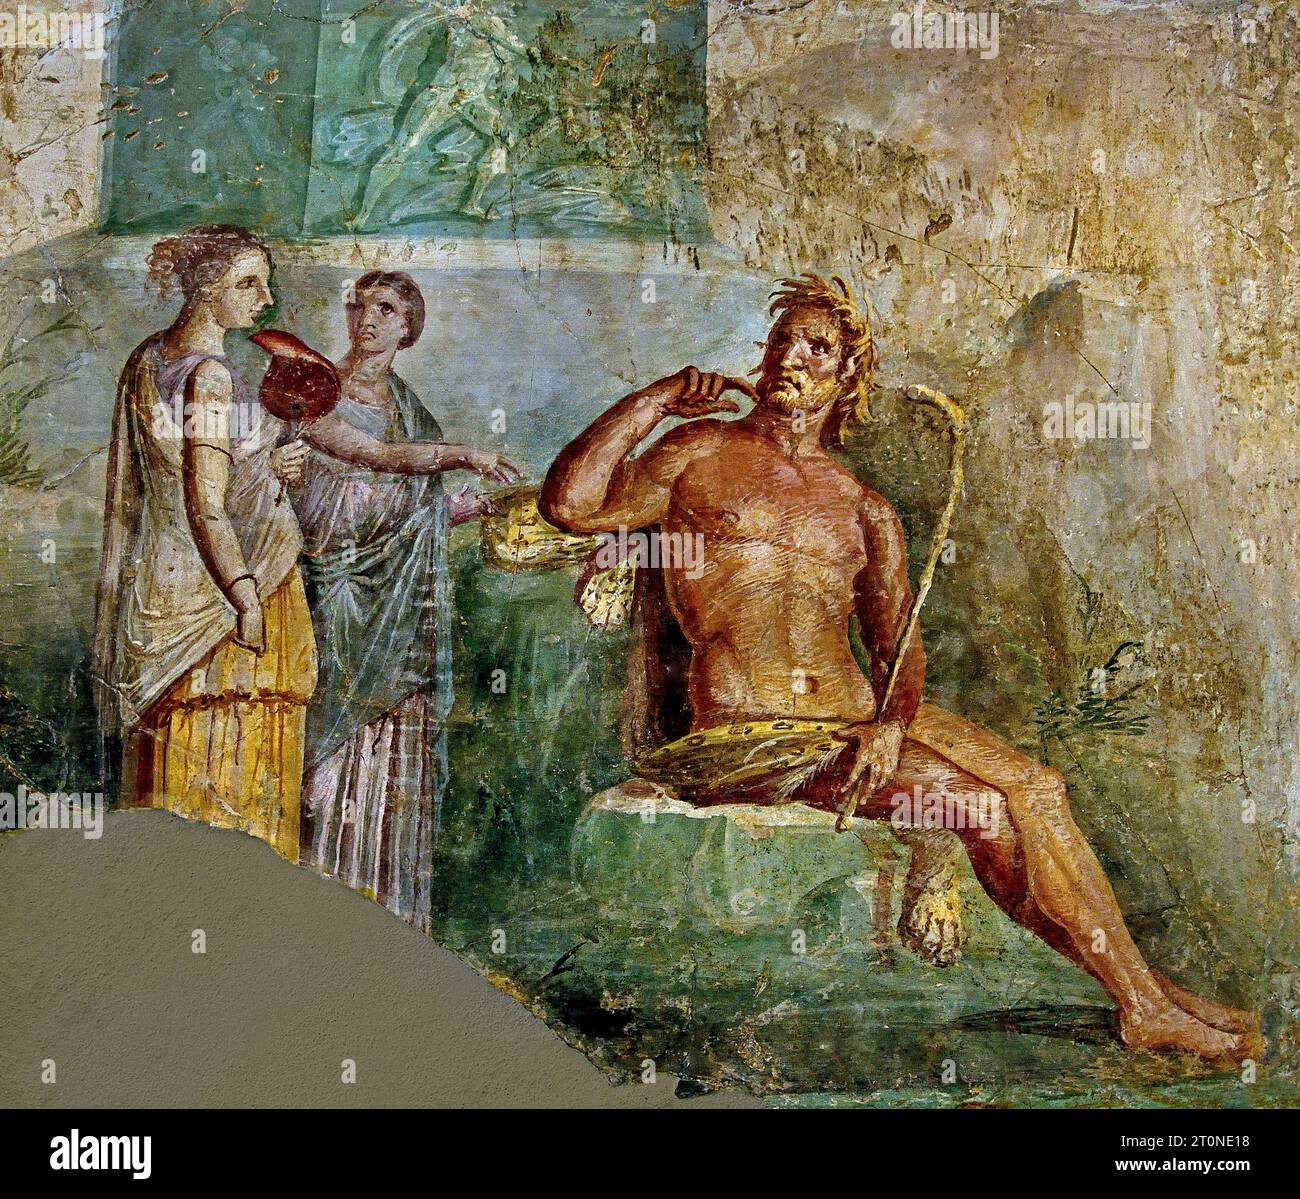 Galatea trova Polifemo. La città romana di fresco Pompei si trova vicino a Napoli, nella regione Campania. Pompei fu sepolta sotto 4-6 m di cenere vulcanica e pomice nell'eruzione del Vesuvio nel 79 d.C. Italia Foto Stock